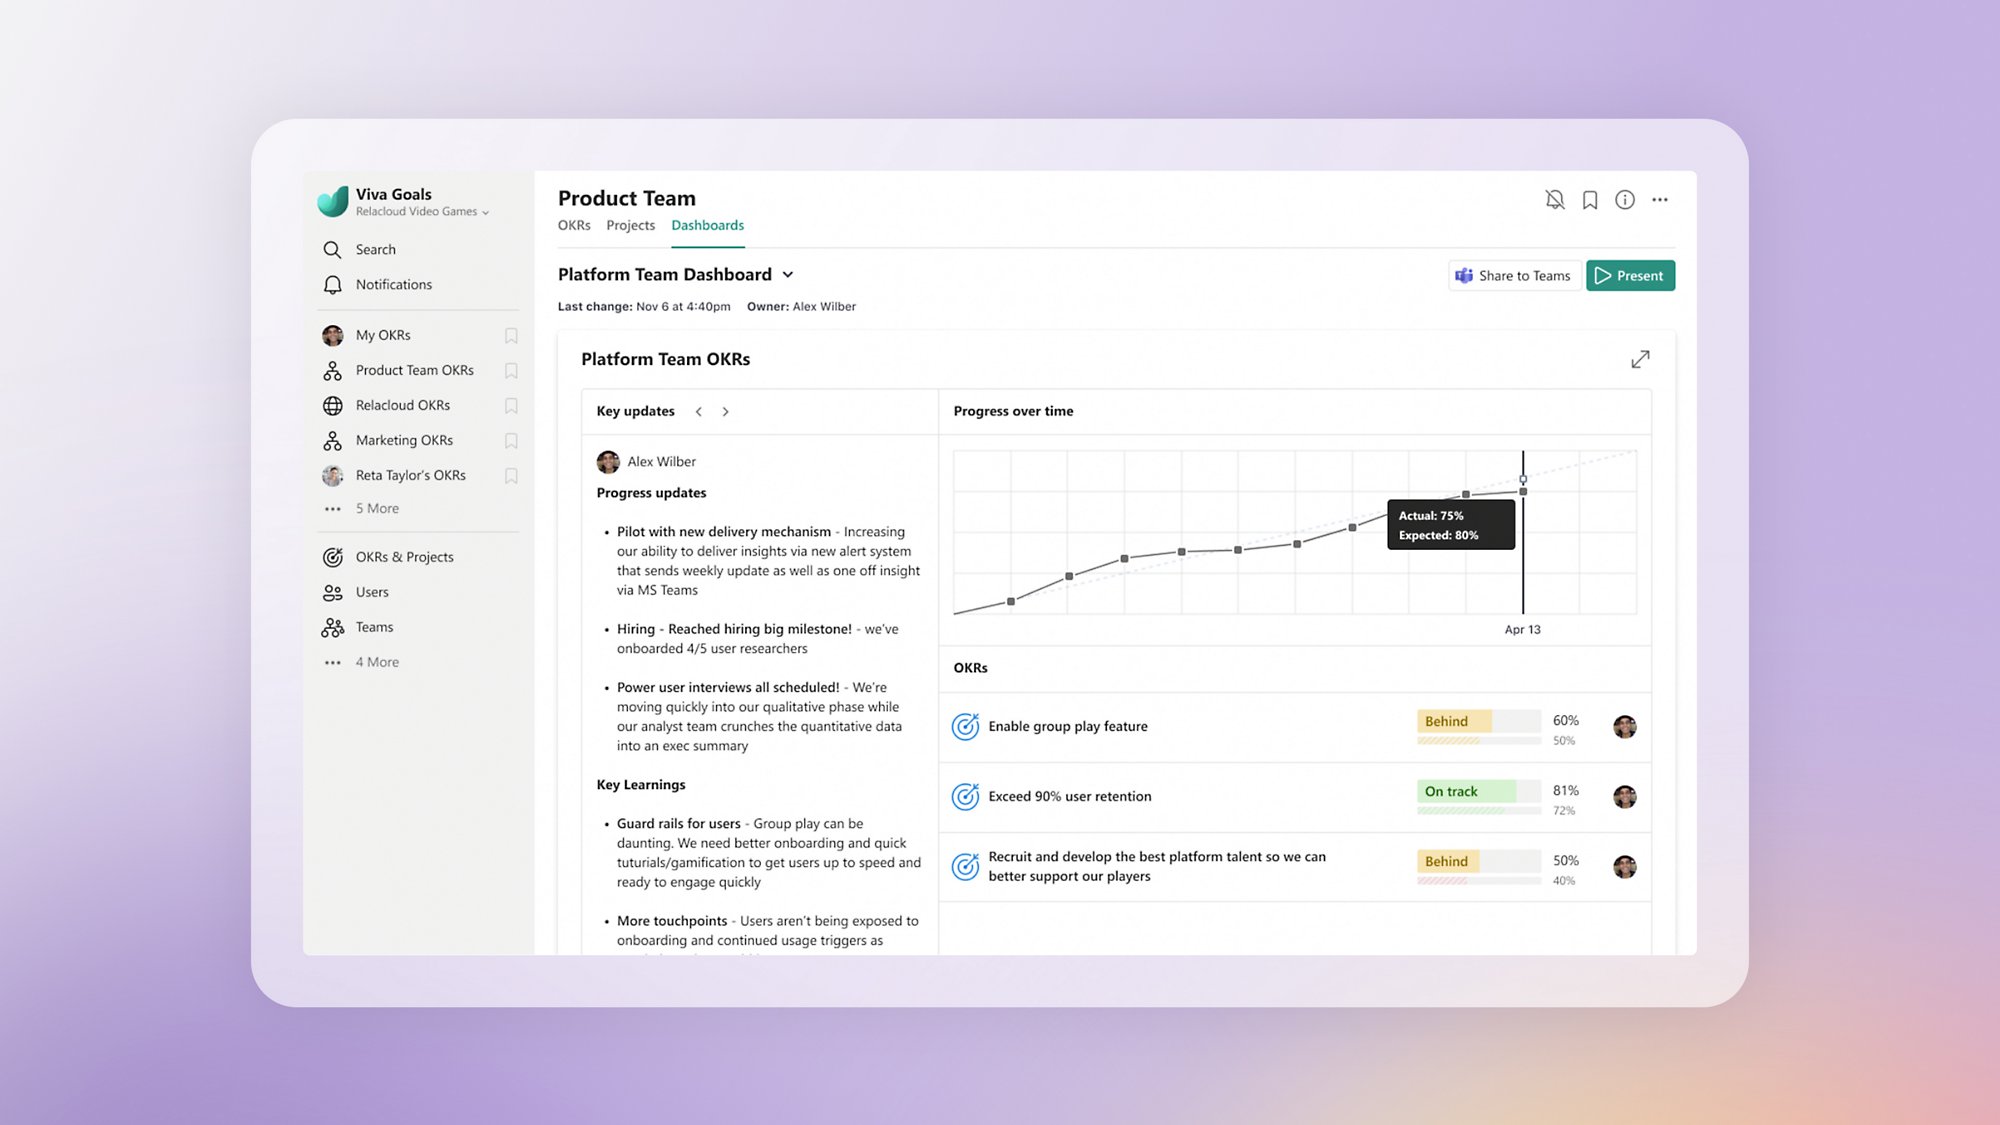 Ein Platform Team Dashboard in Viva Goals, in dem wichtige Updates, eine Grafik mit Fortschritten im Zeitverlauf und nachverfolgbare OKRs angezeigt werden